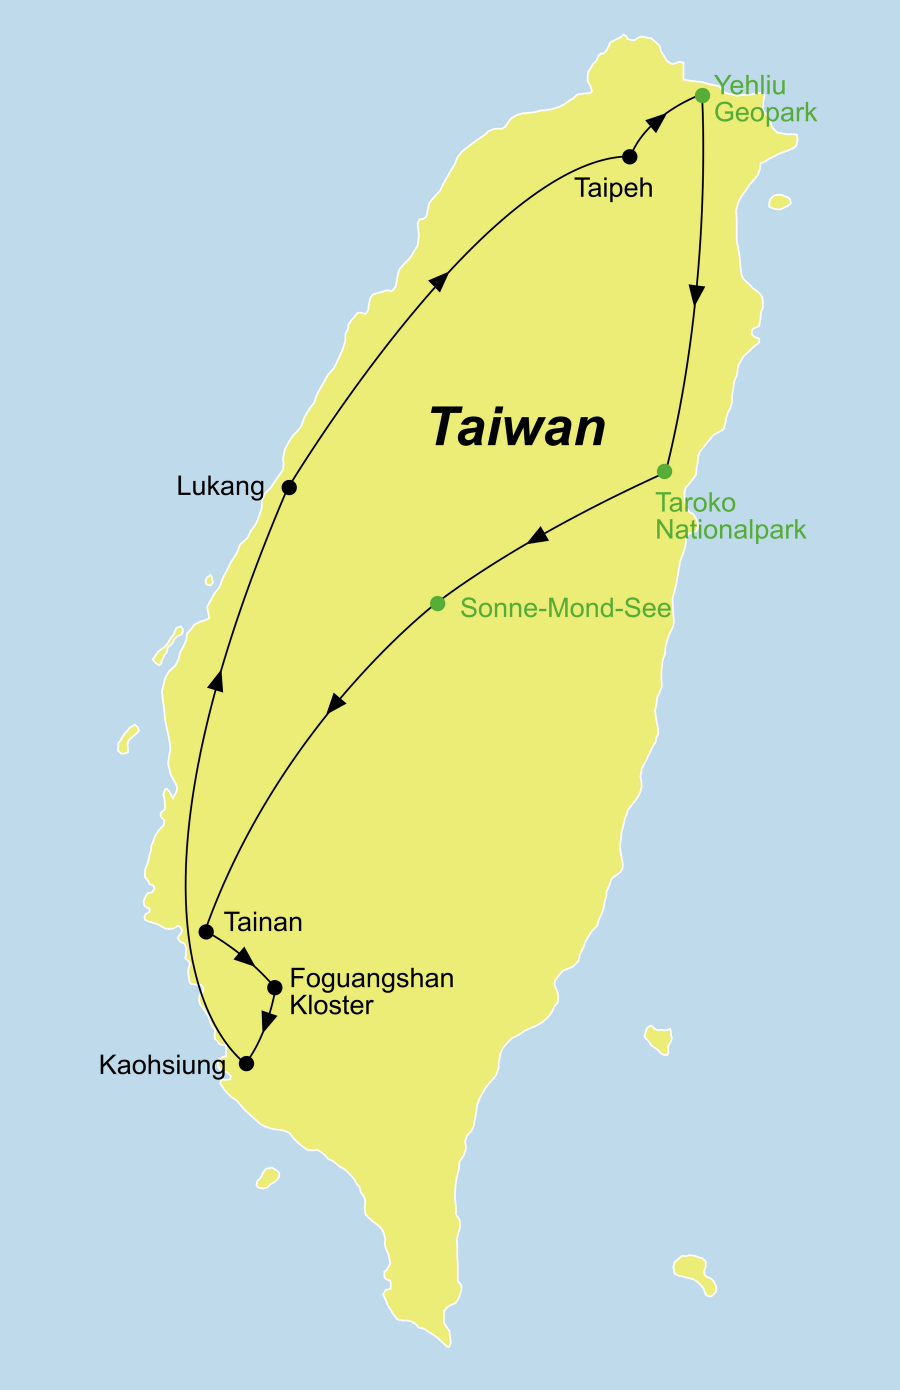 Die Taiwan kompakt Rundreise führt von Taipeh über den Tarolo Nationalpark, den Sonne-Mond-See, Tainan, das Foguangshan Kloster, Kaoshiung und Luhang zurück nach Taipeh.